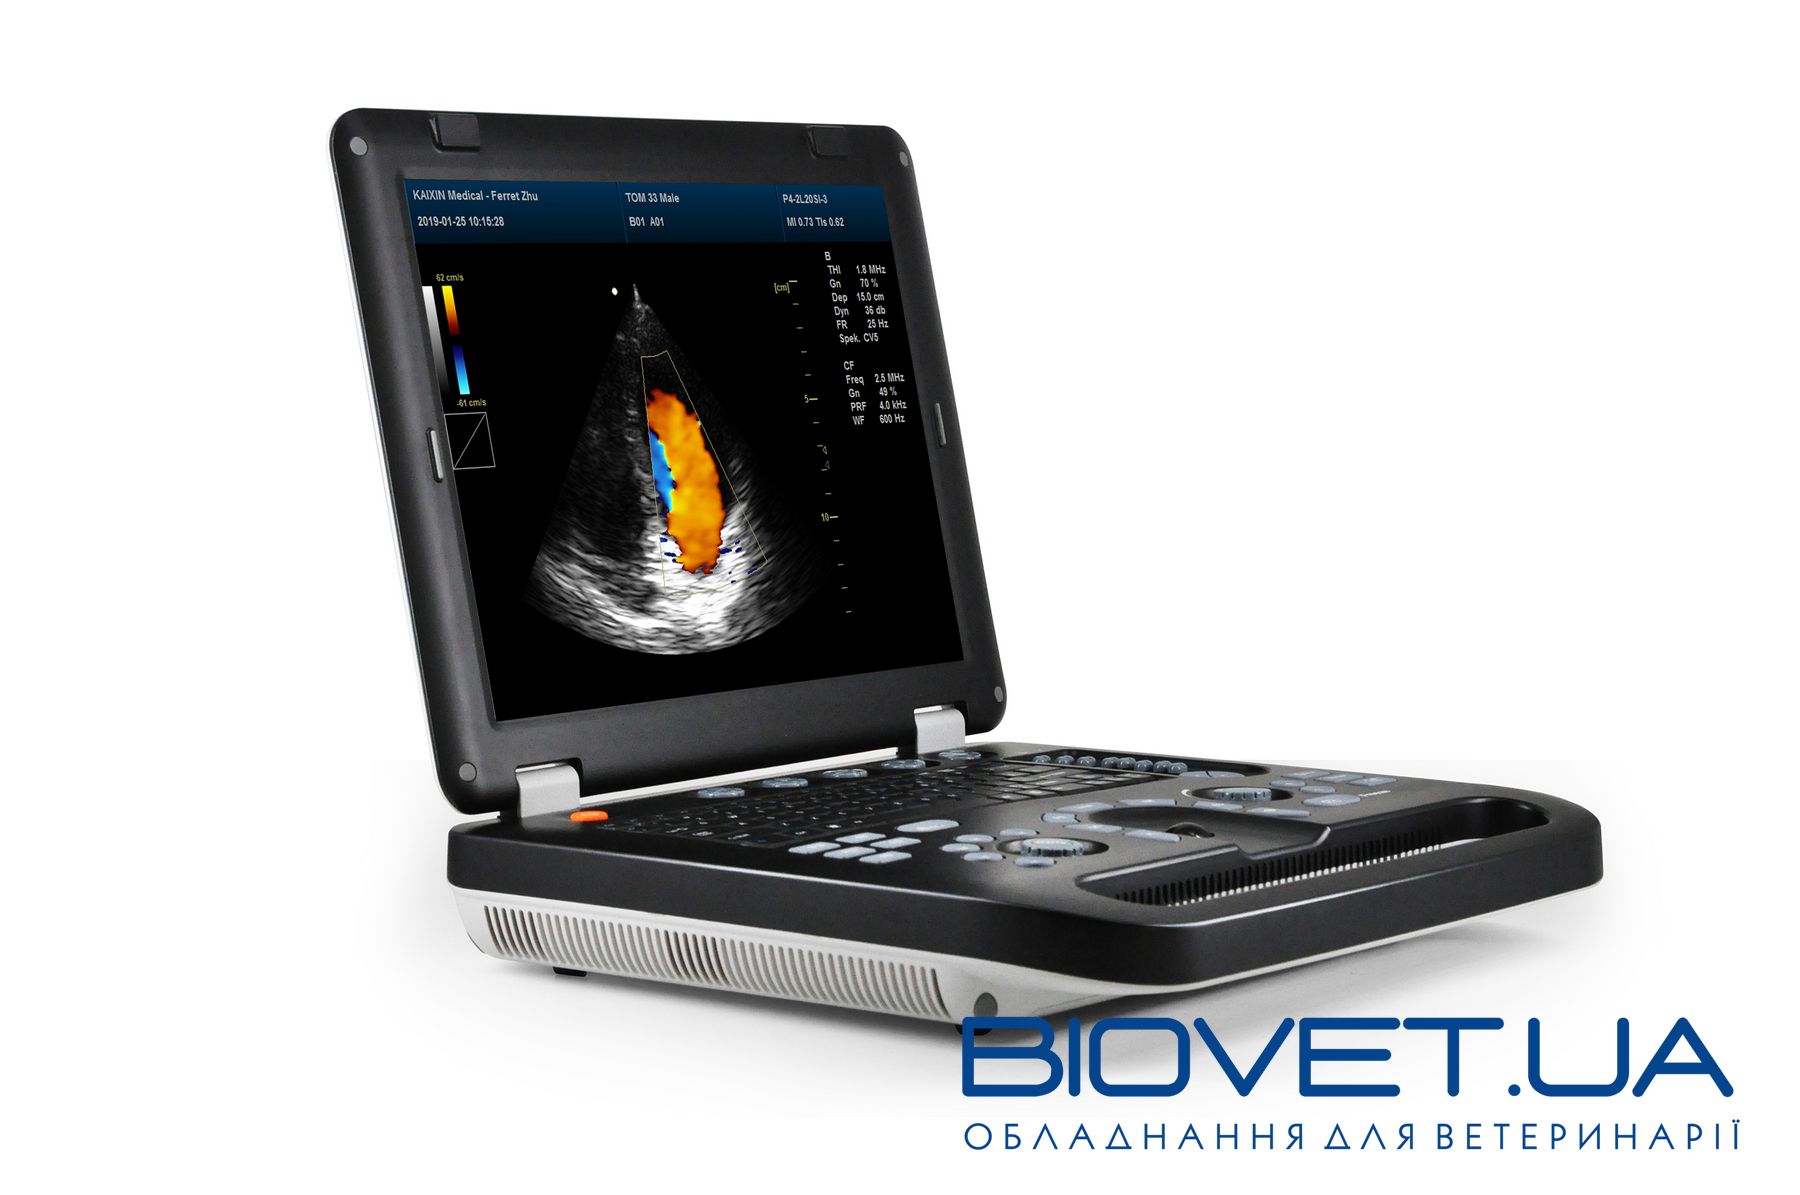 Biovet.ua - сучасне та інноваційне обладнання для ветеринарії